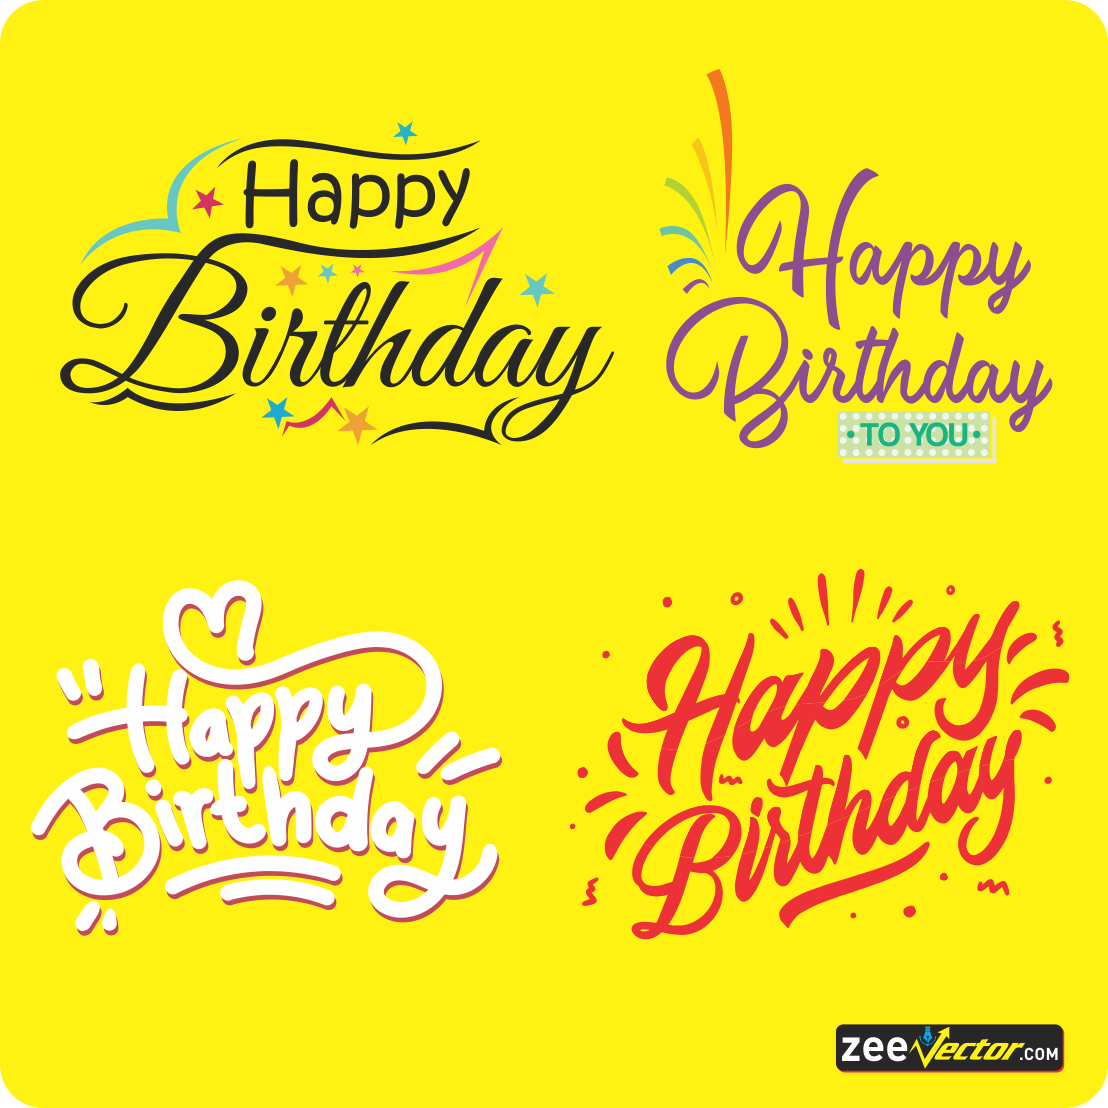 Happy-Birthday-Calligraphy-Vector-FREE